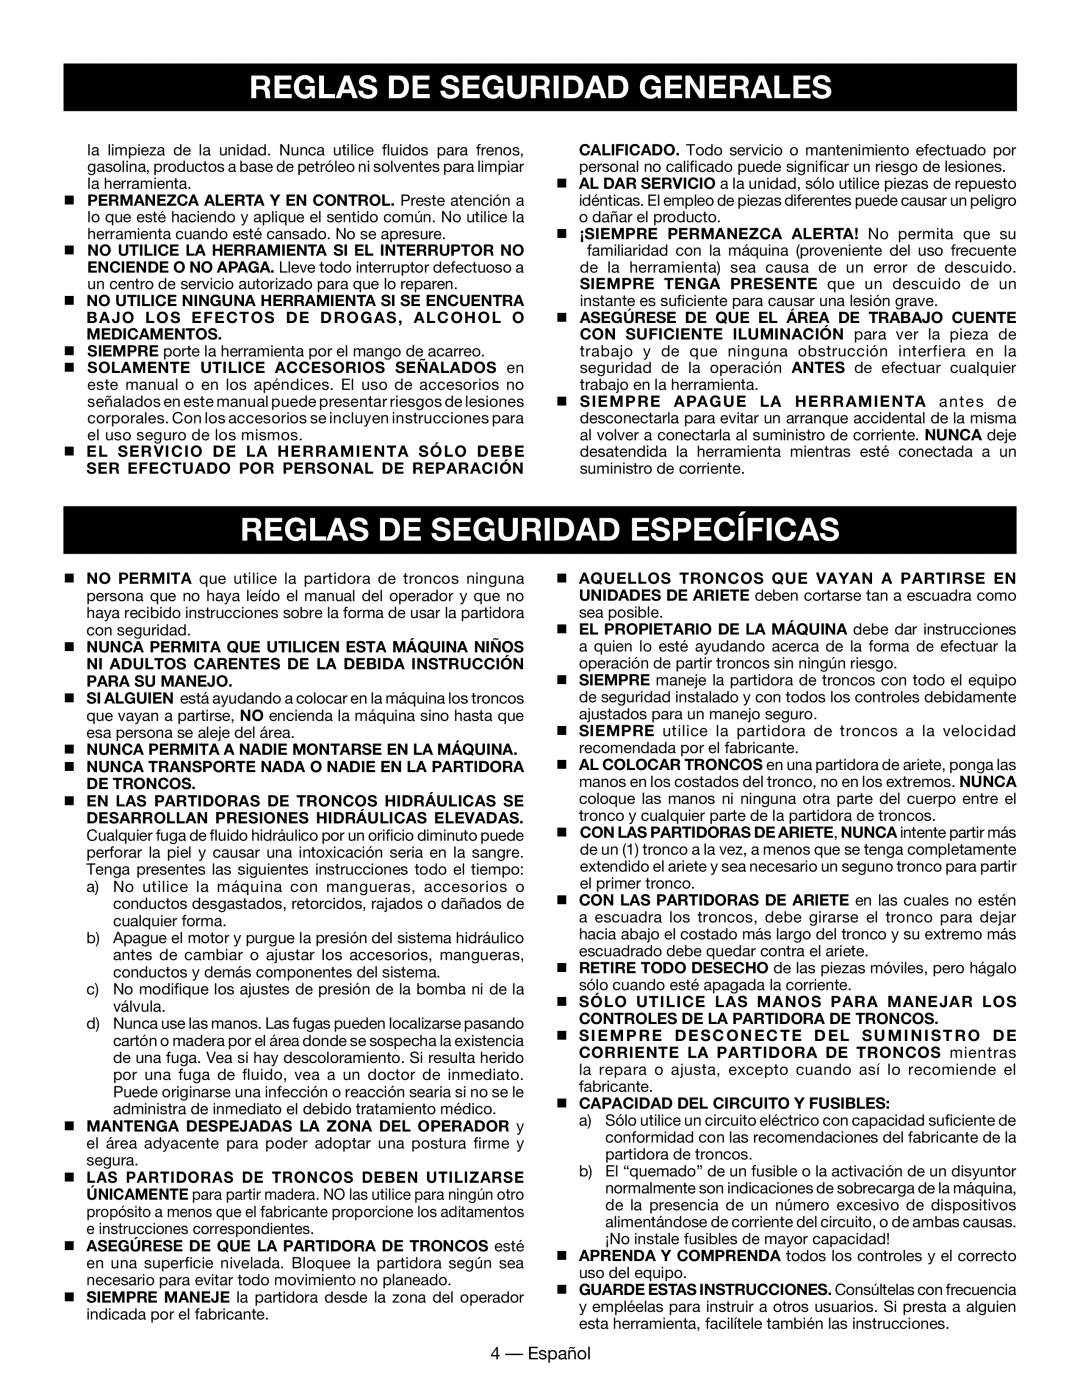 Homelite UT49102 manuel dutilisation Reglas De Seguridad Específicas, Reglas De Seguridad Generales, Español 